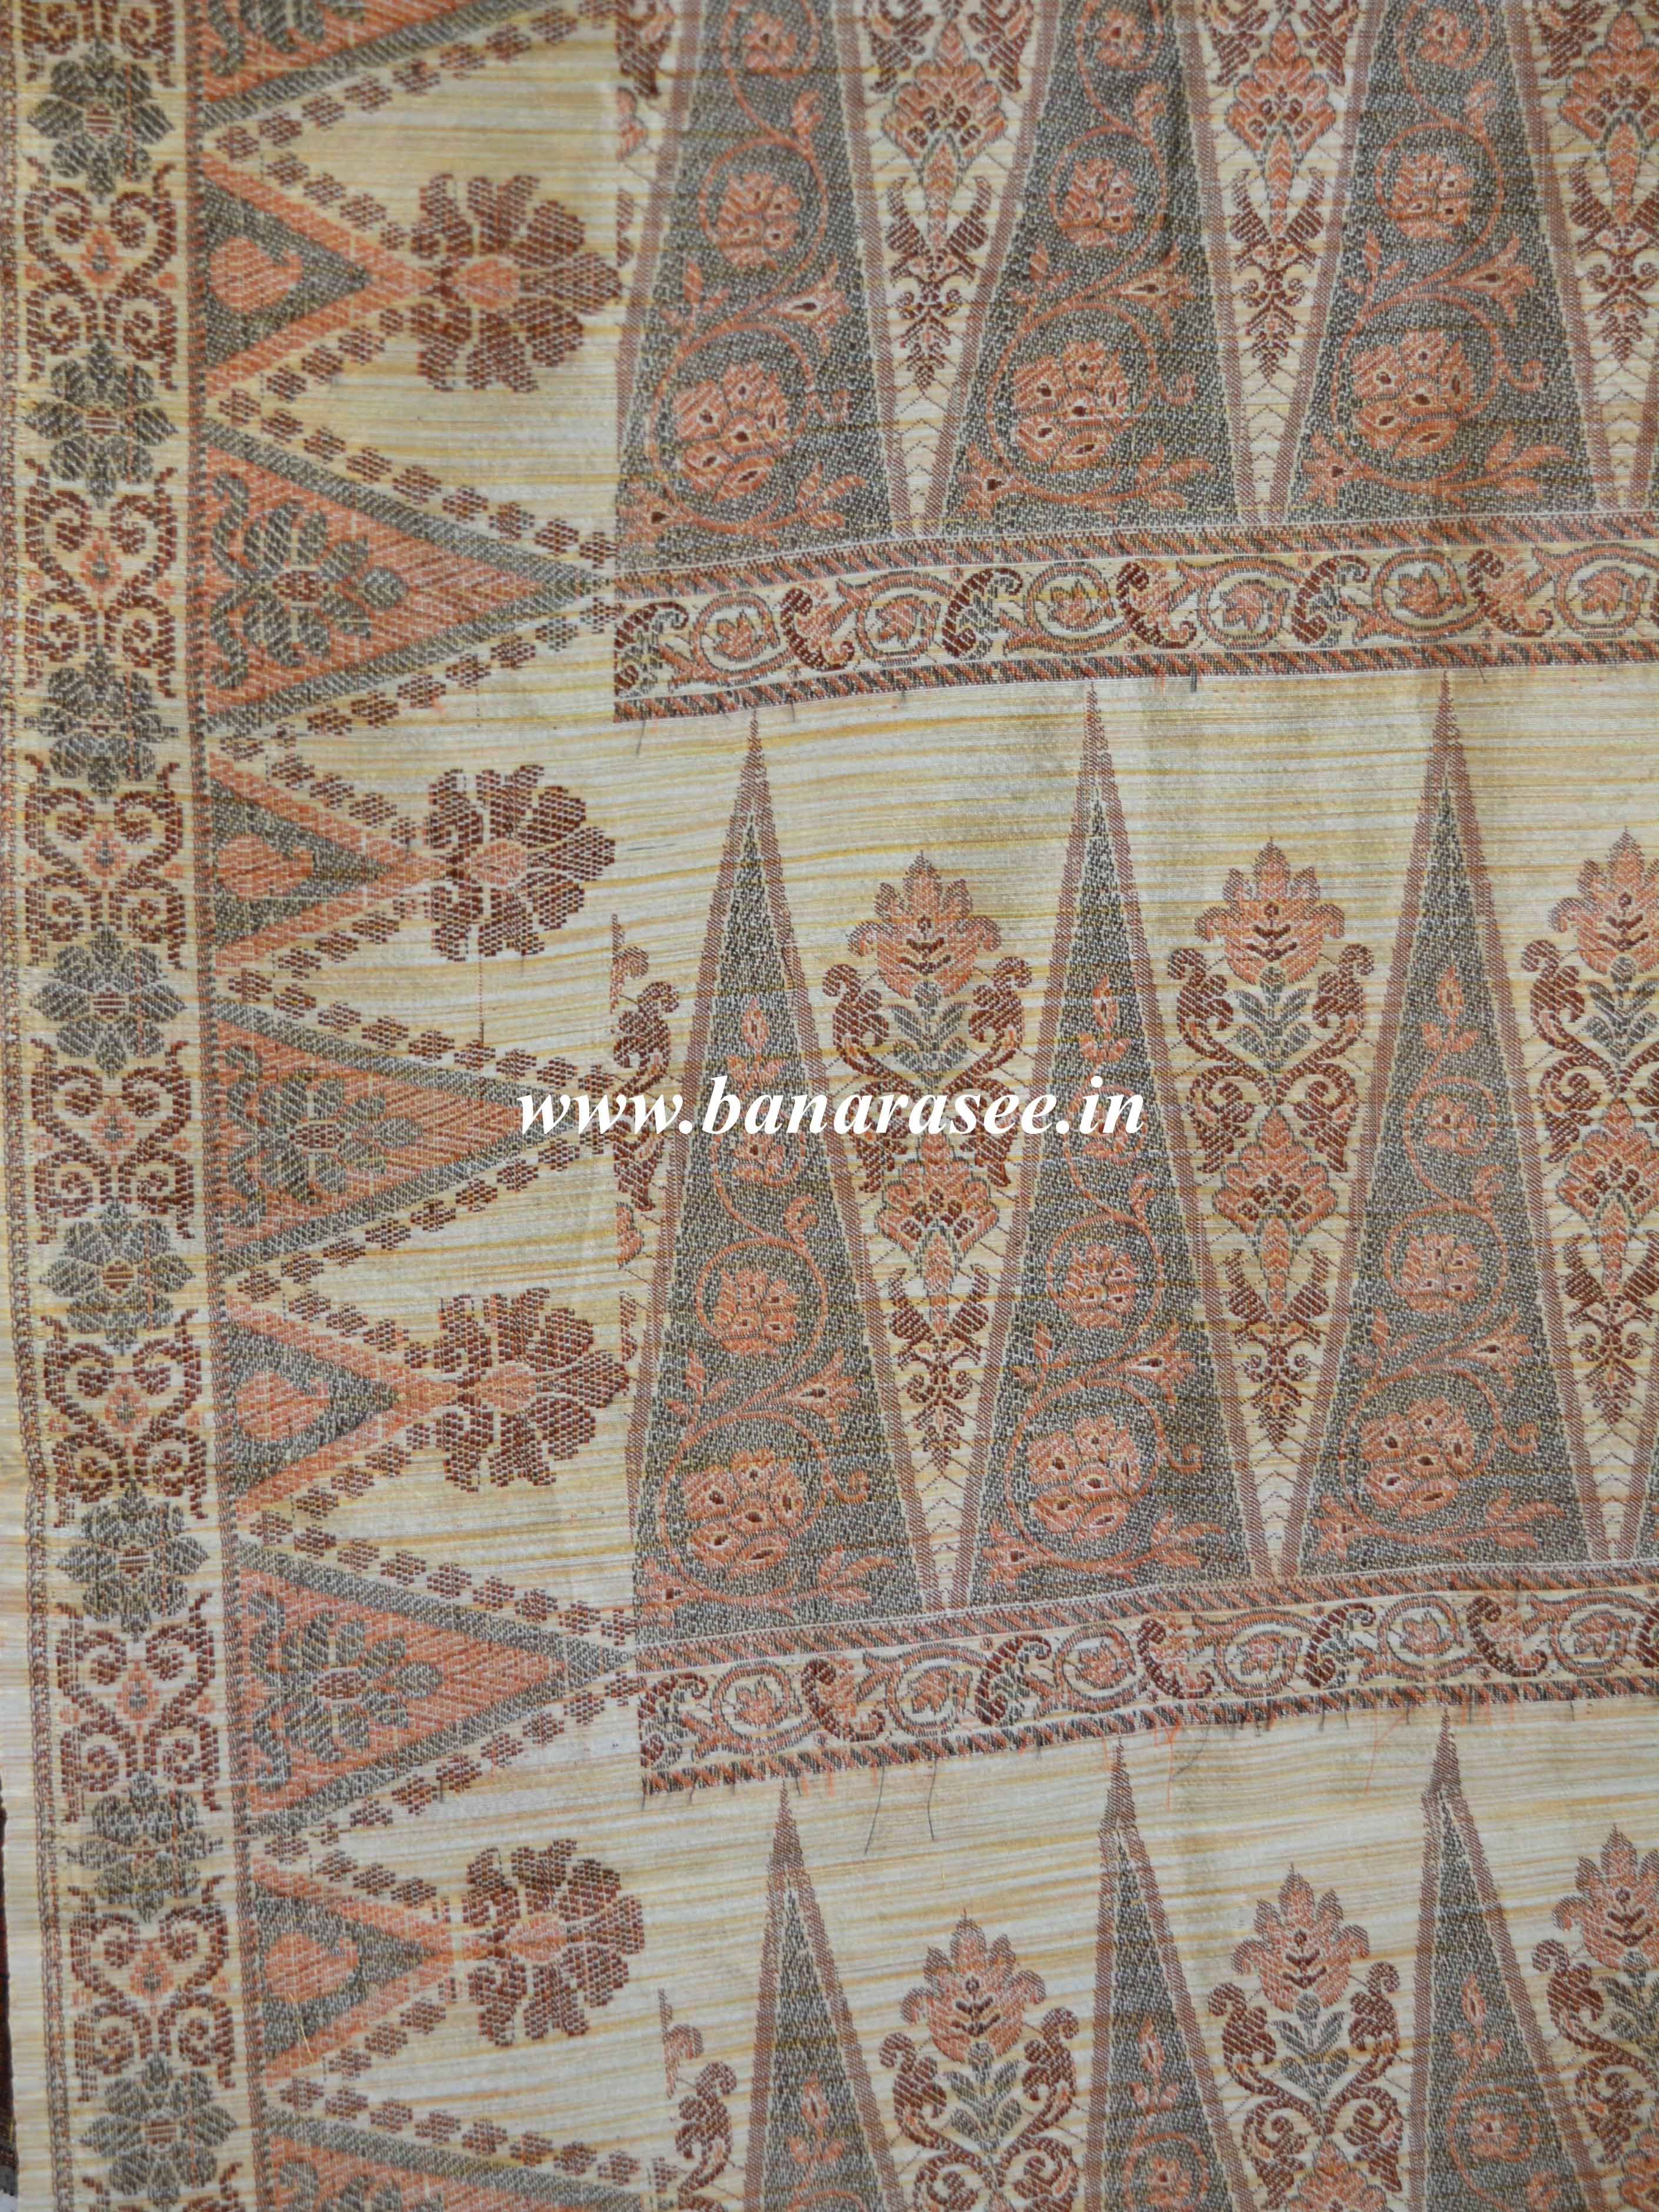 Banarasee Art Silk Saree With Floral Woven Design Contrast Beige Pallu-Dark Brown